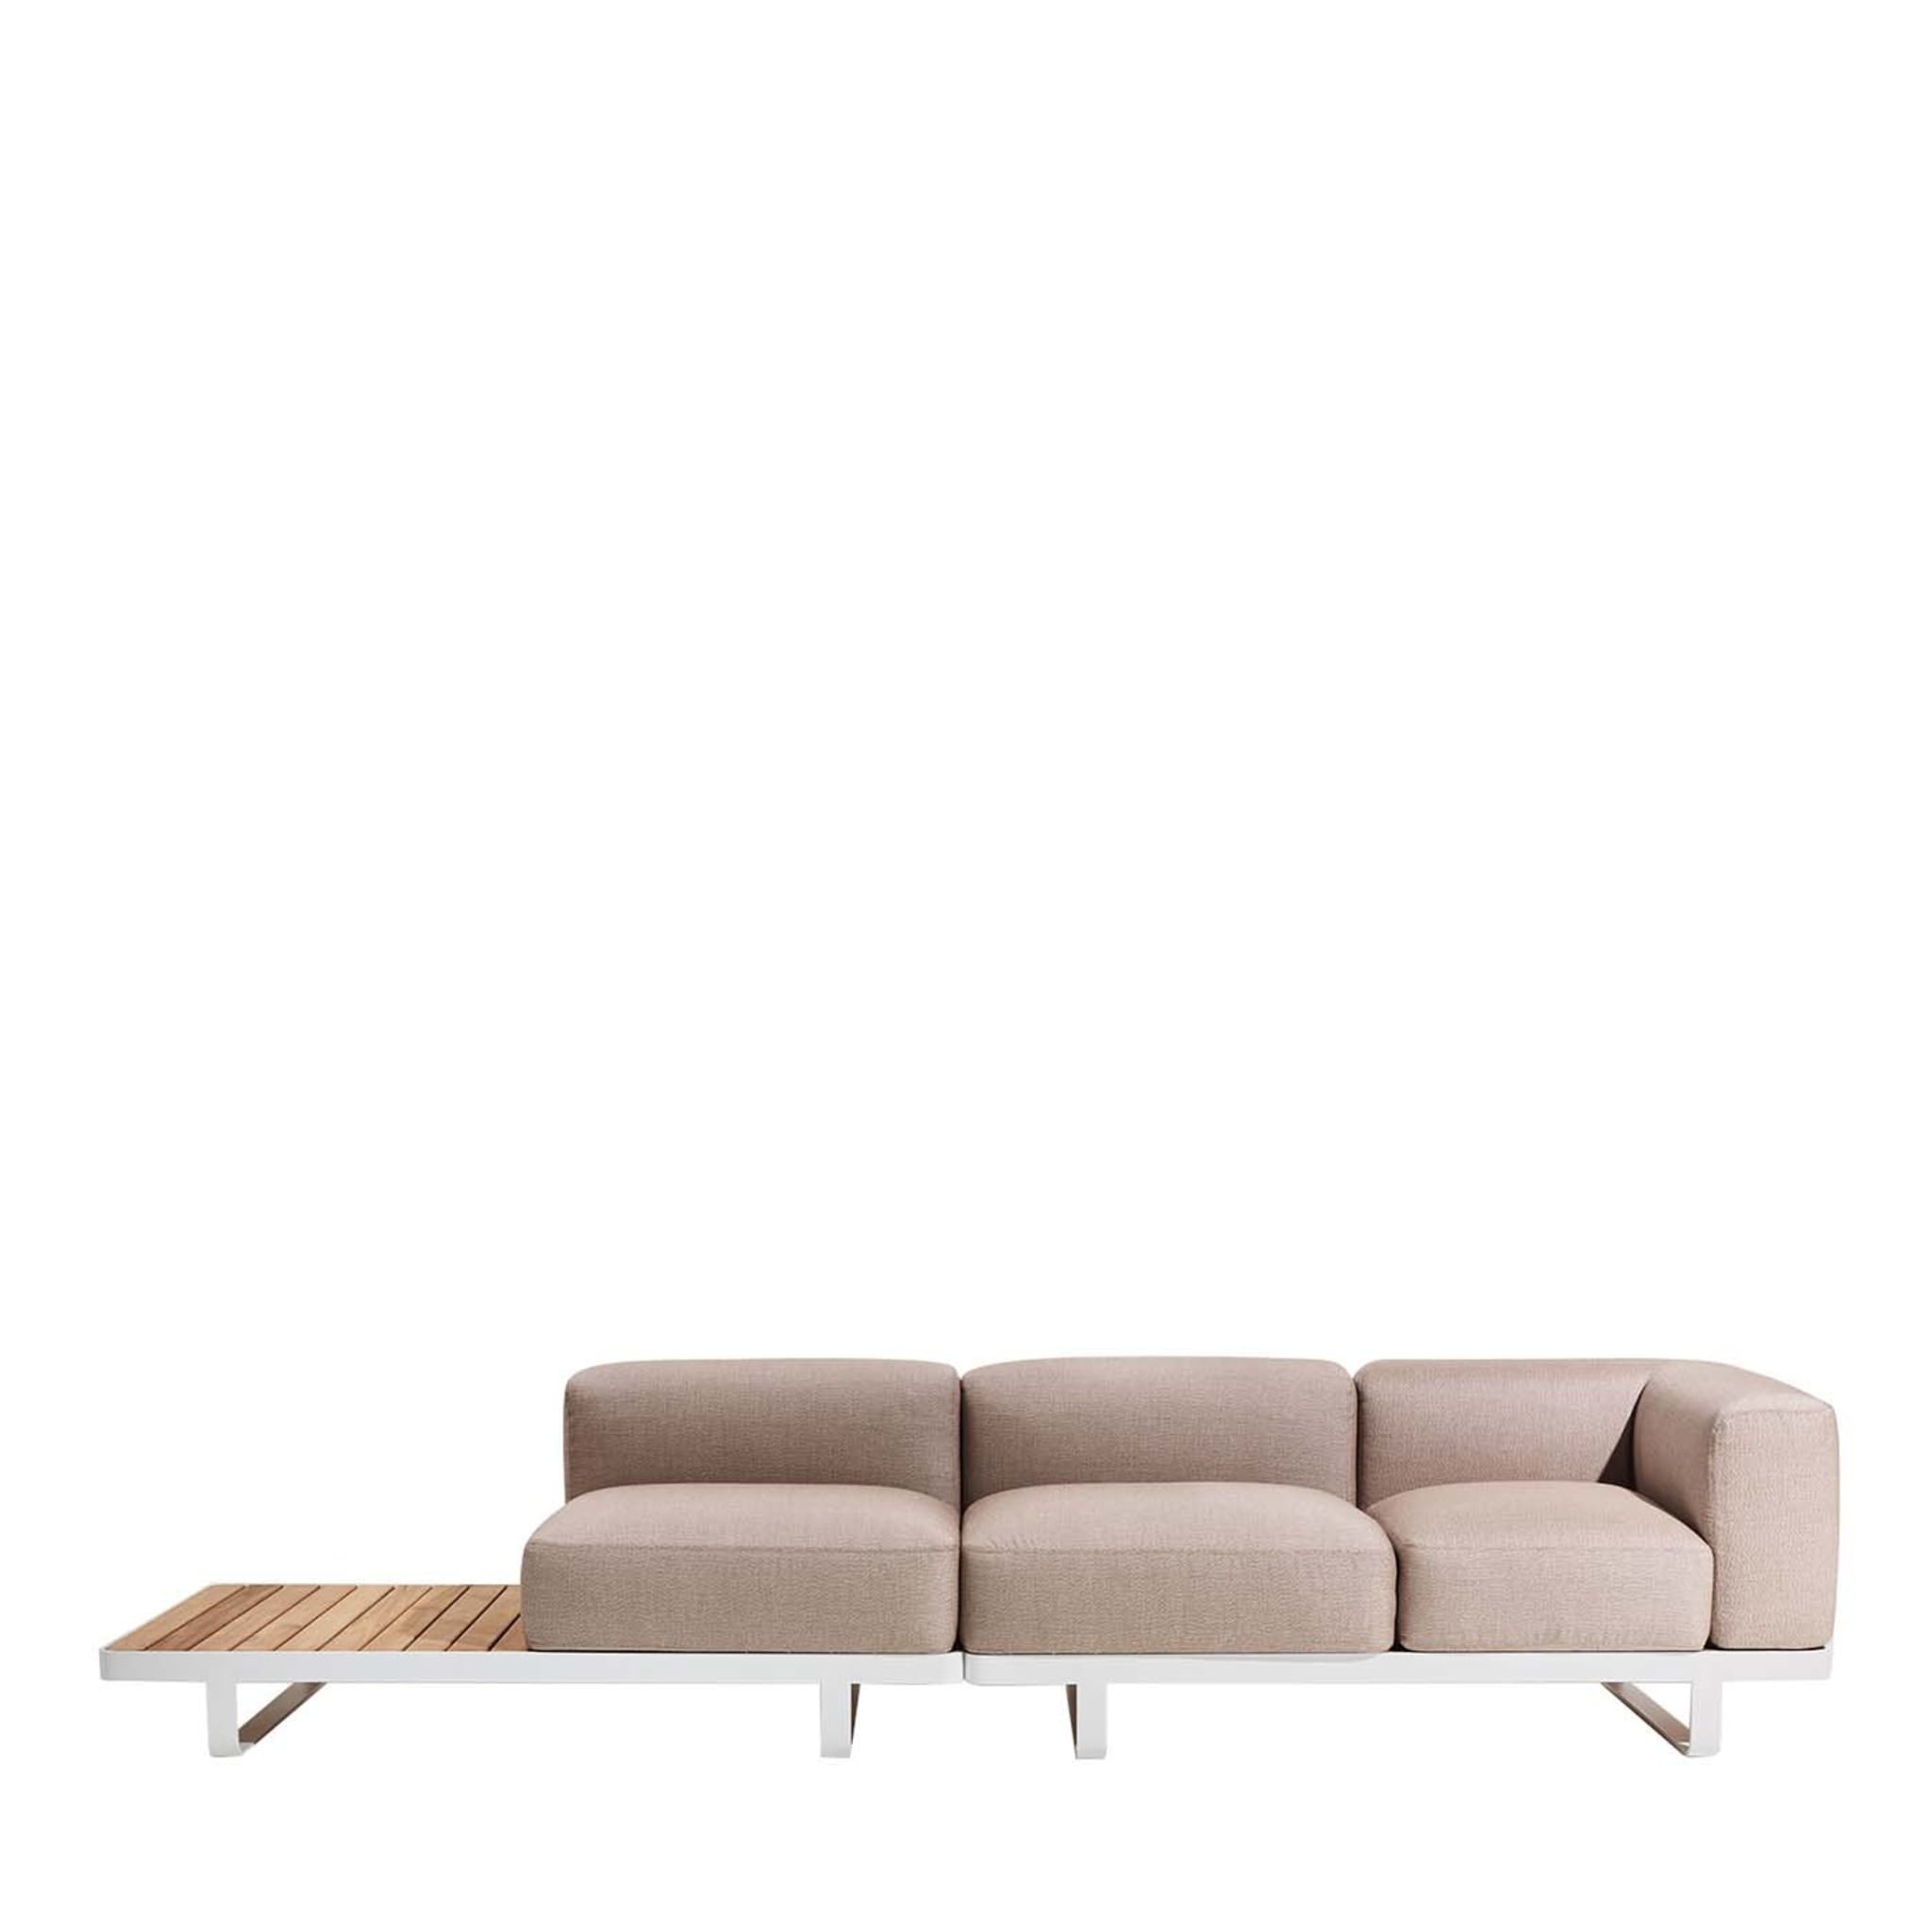 Makemake White and Beige Modular Sofa - Main view